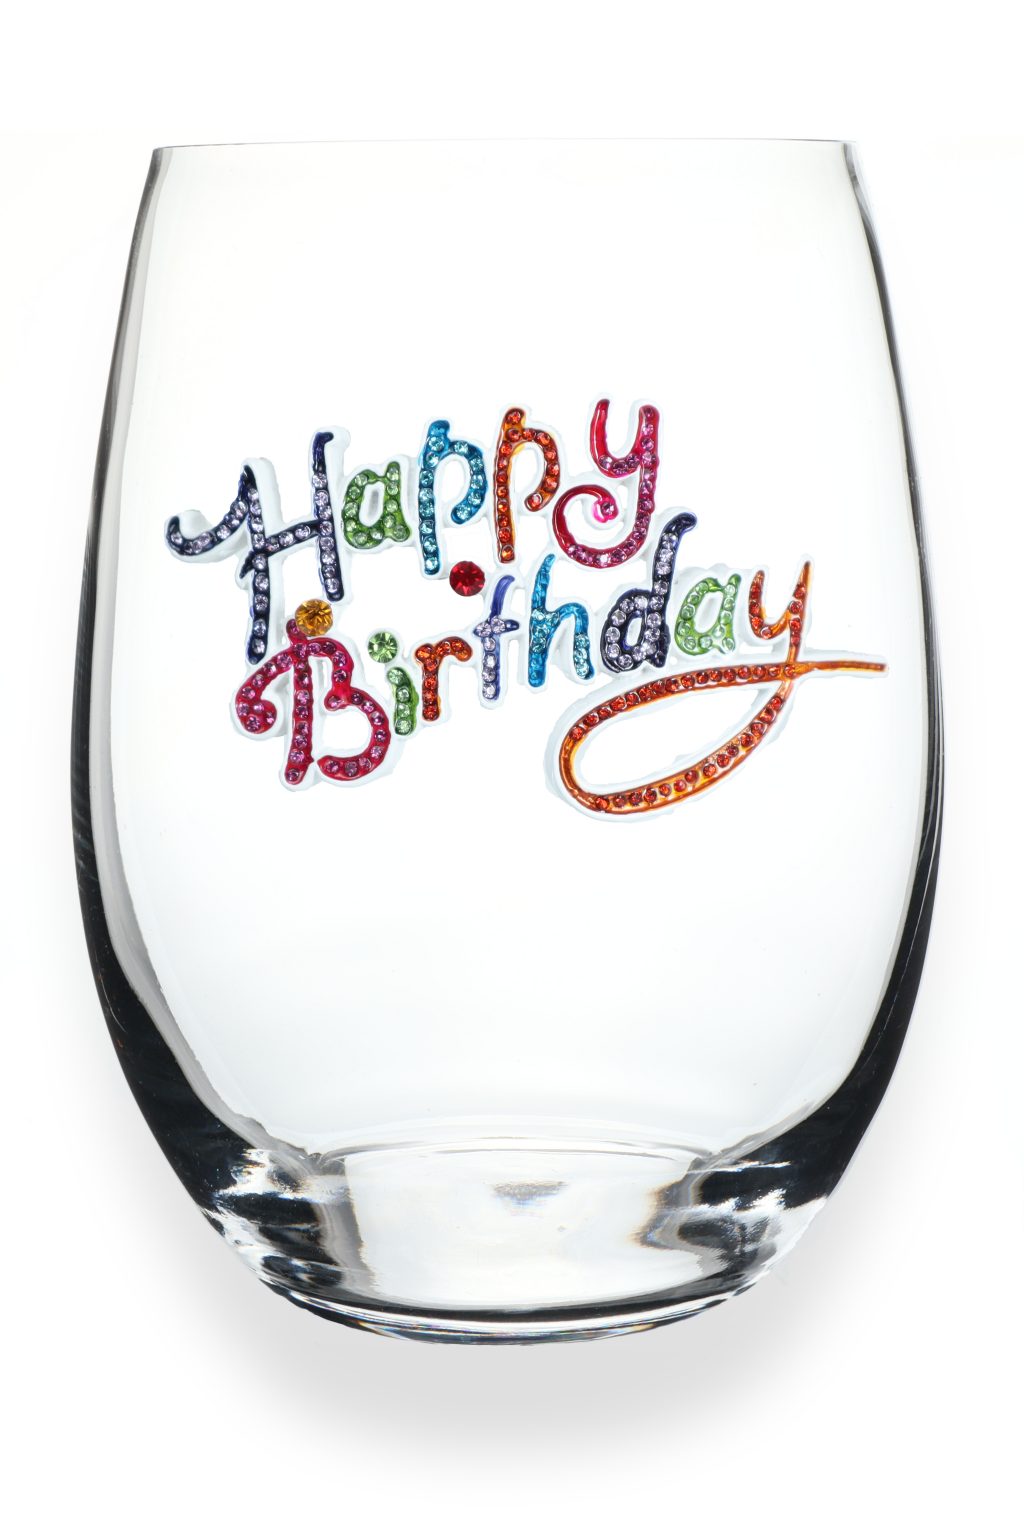 Happy Birthday Jeweled Stemless Wine Glass